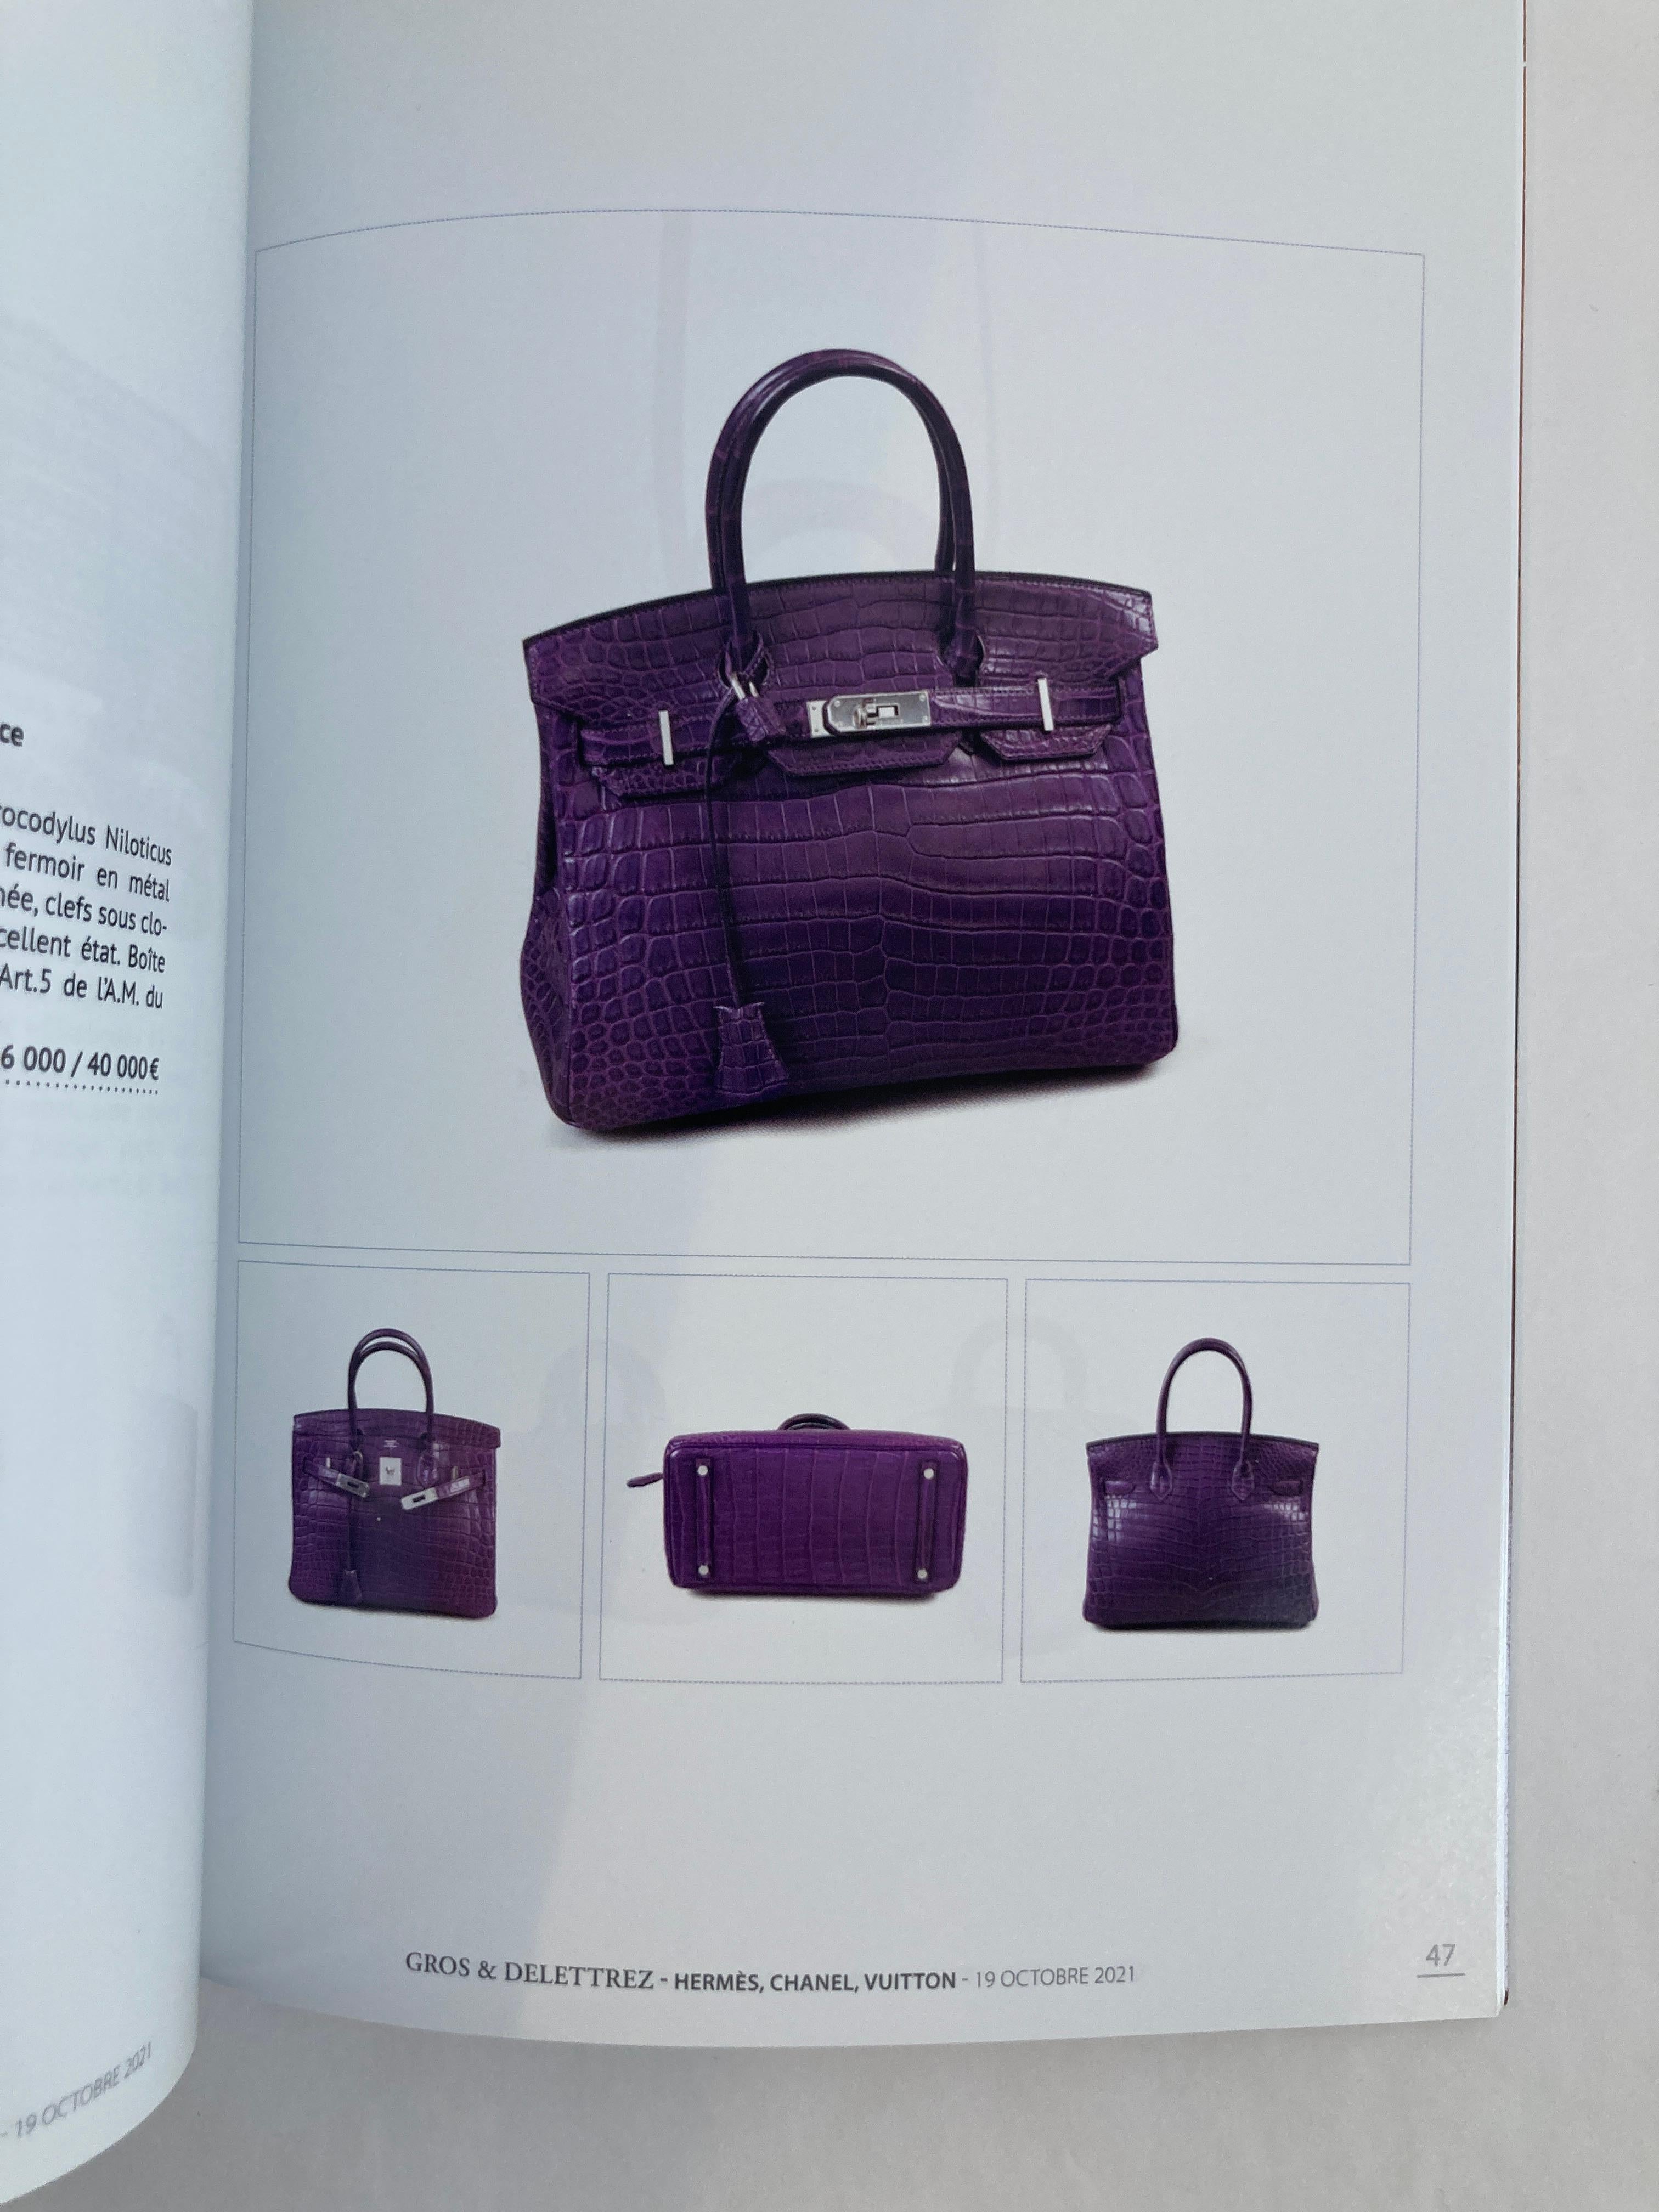 Hermès - Catalogue de vente aux enchères Luxe Chanel Vuitton 2021 par Gros & Delettrez en vente 1